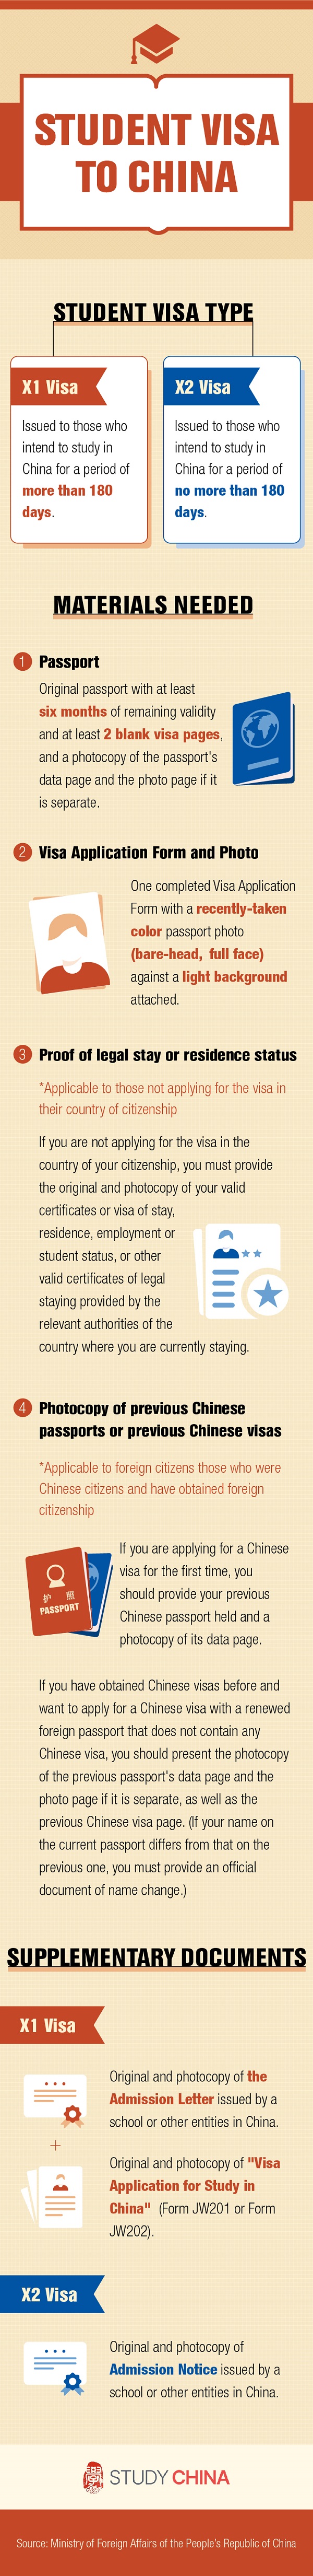 Student visa to China